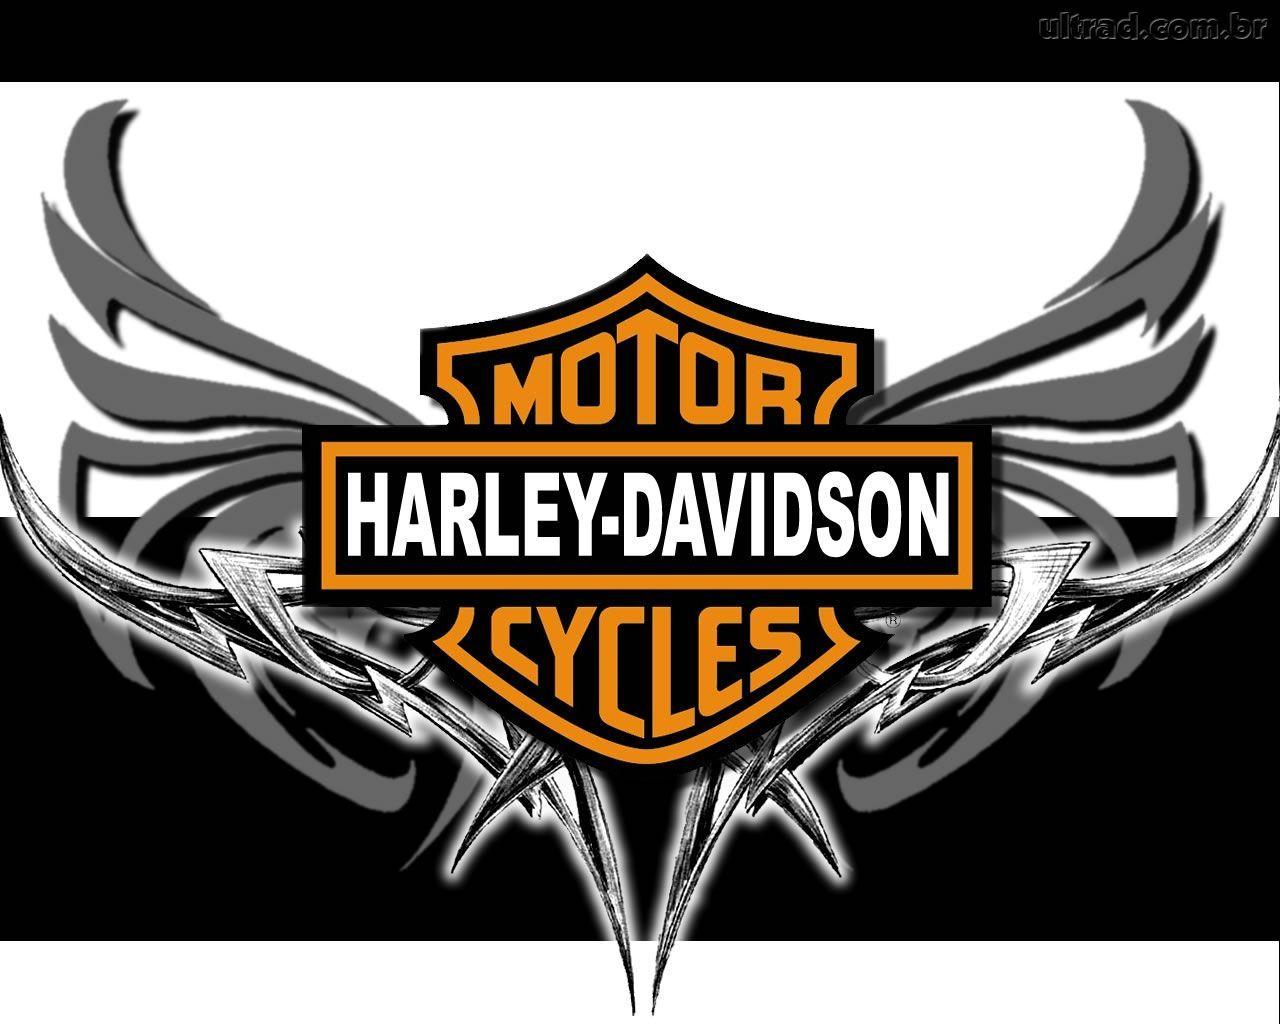 osolaindabrilha: harley davidson logo 02